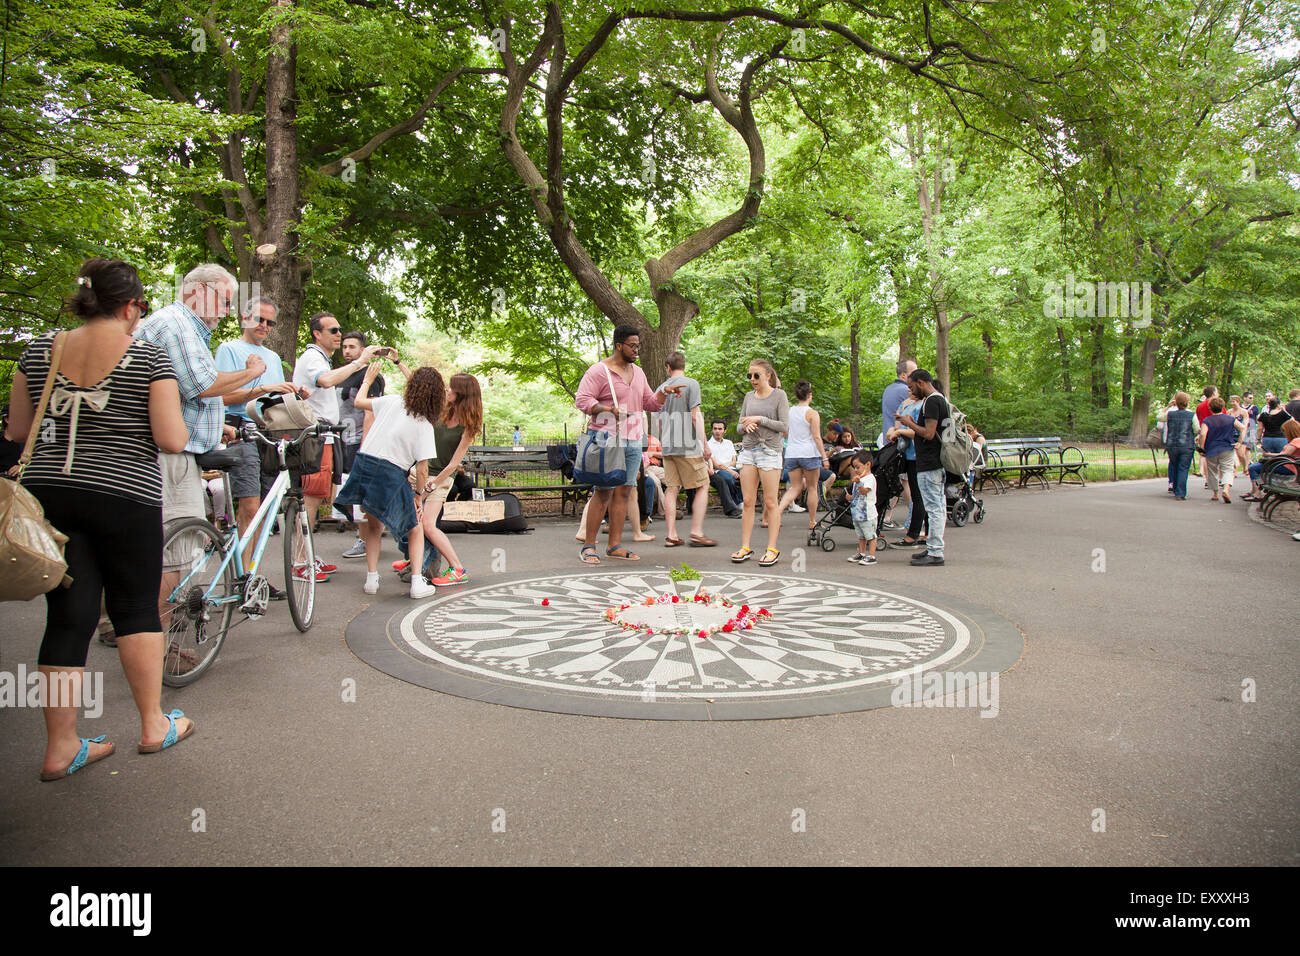 NEW YORK - Mai 25, 2015 : Les gens se rassemblent à Strawberry Fields à Central Park, New York City. Strawberry Fields est un à h Banque D'Images